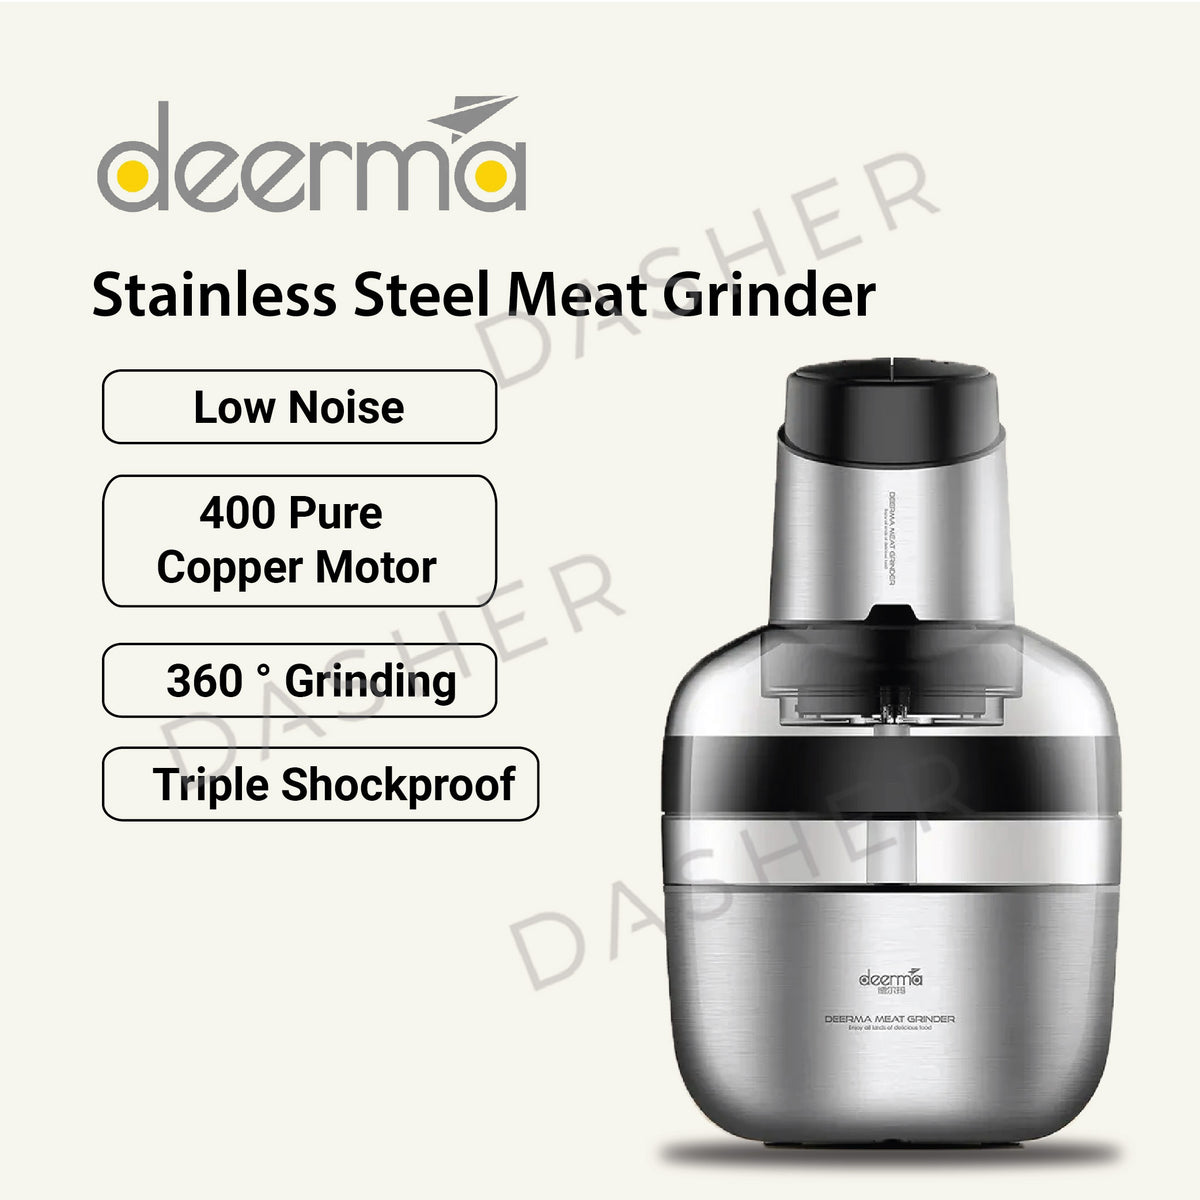 Deerma Electric Meat Grinder - Best tool for cuts foods